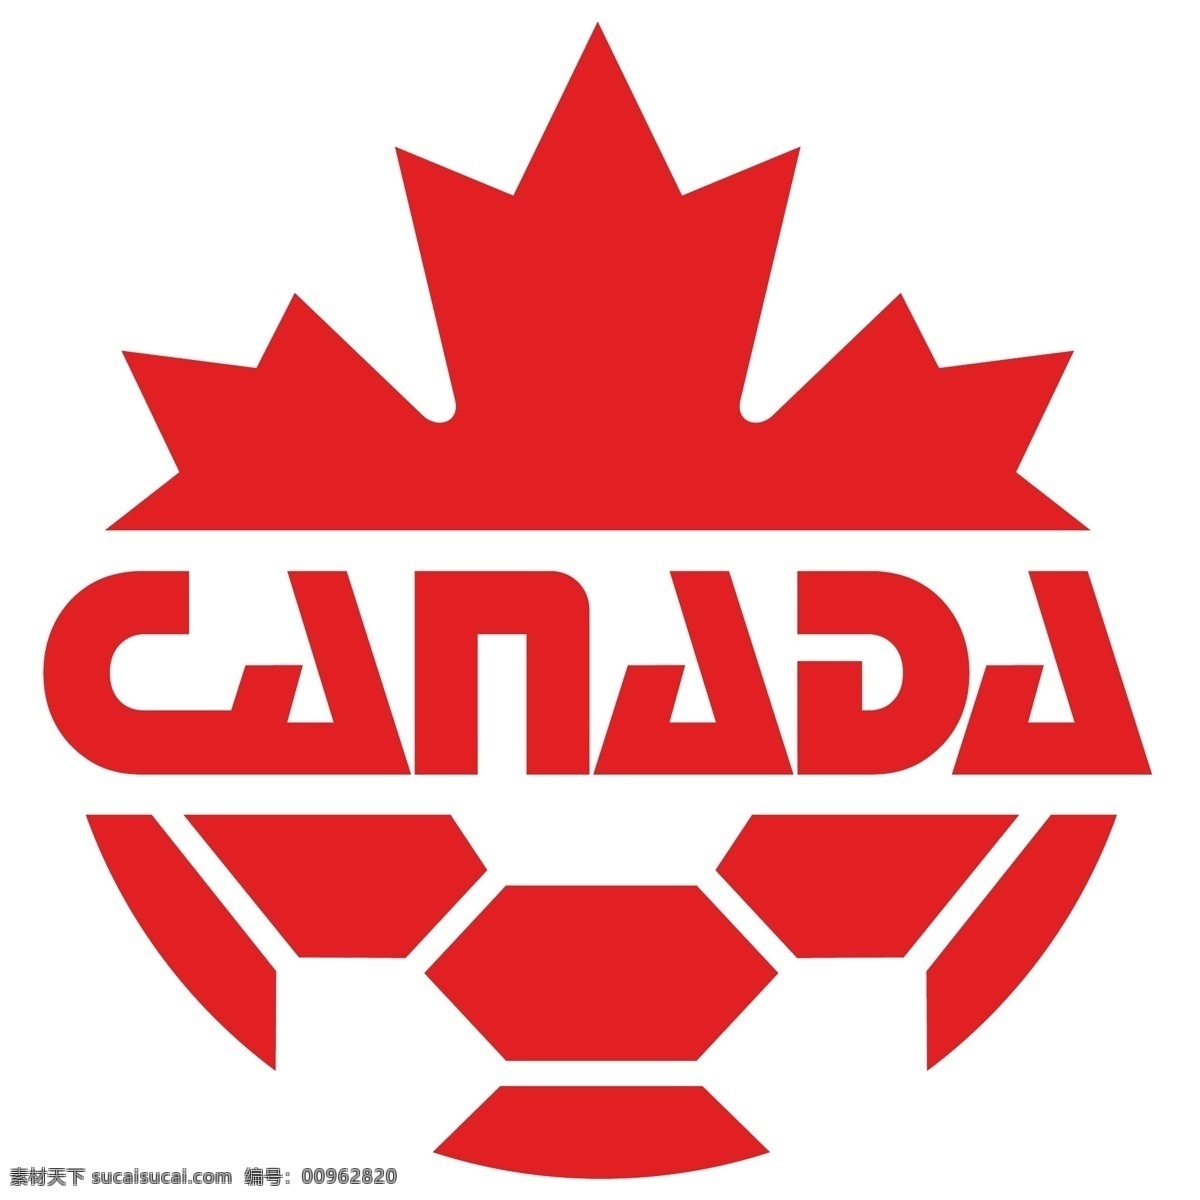 加拿大 足球 协会 自由 标志 标识 psd源文件 logo设计